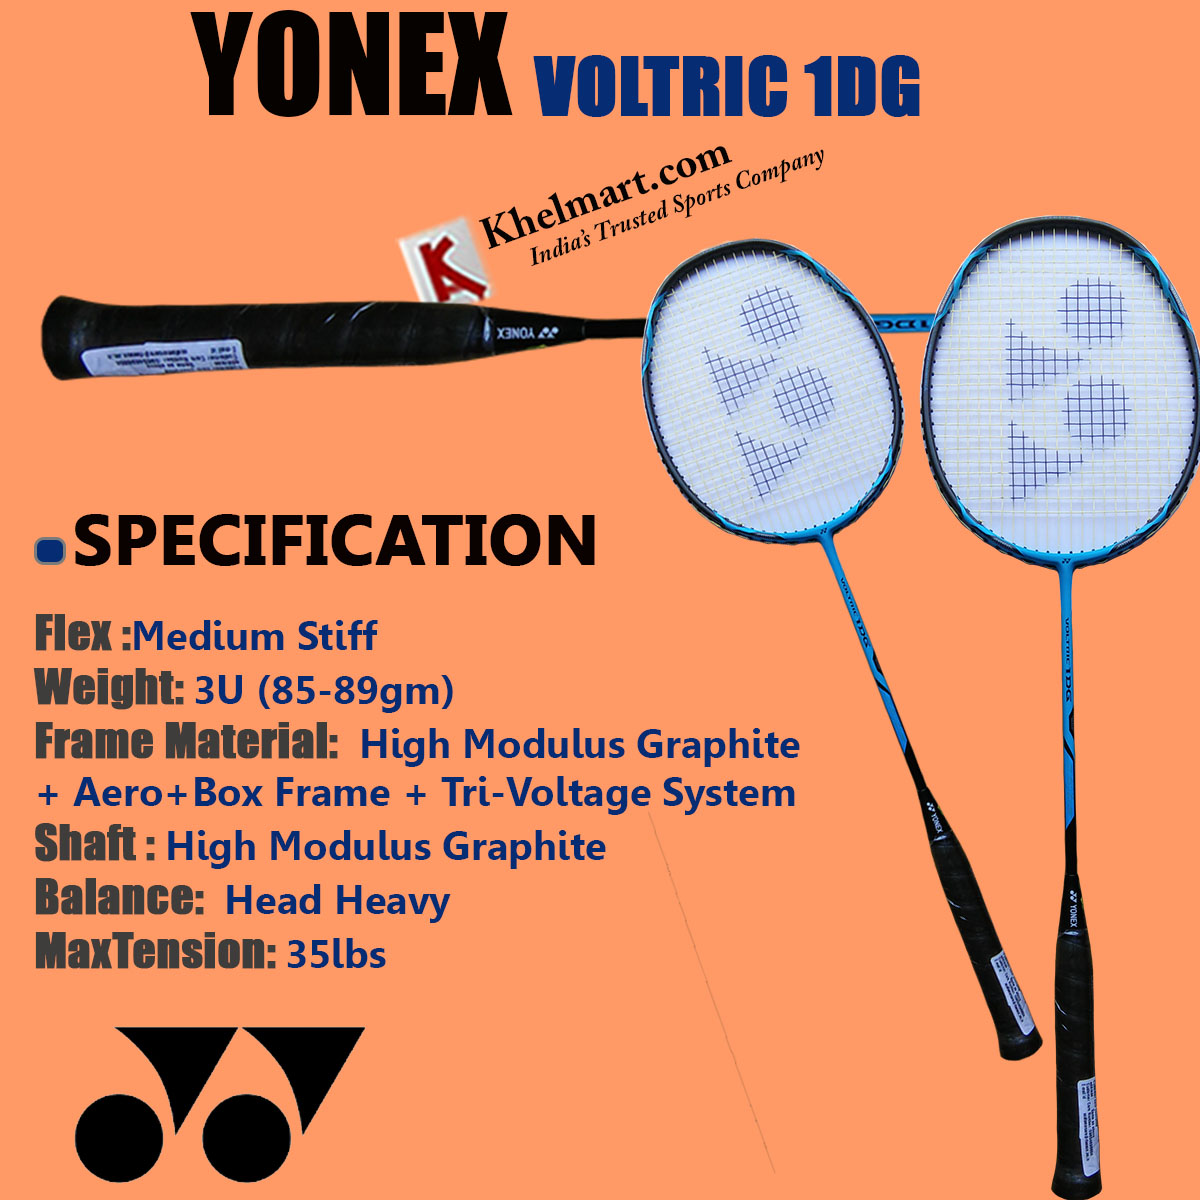 YONEX_VOLTRIC_1DG_BADMINTON_RACKET_10.jpg